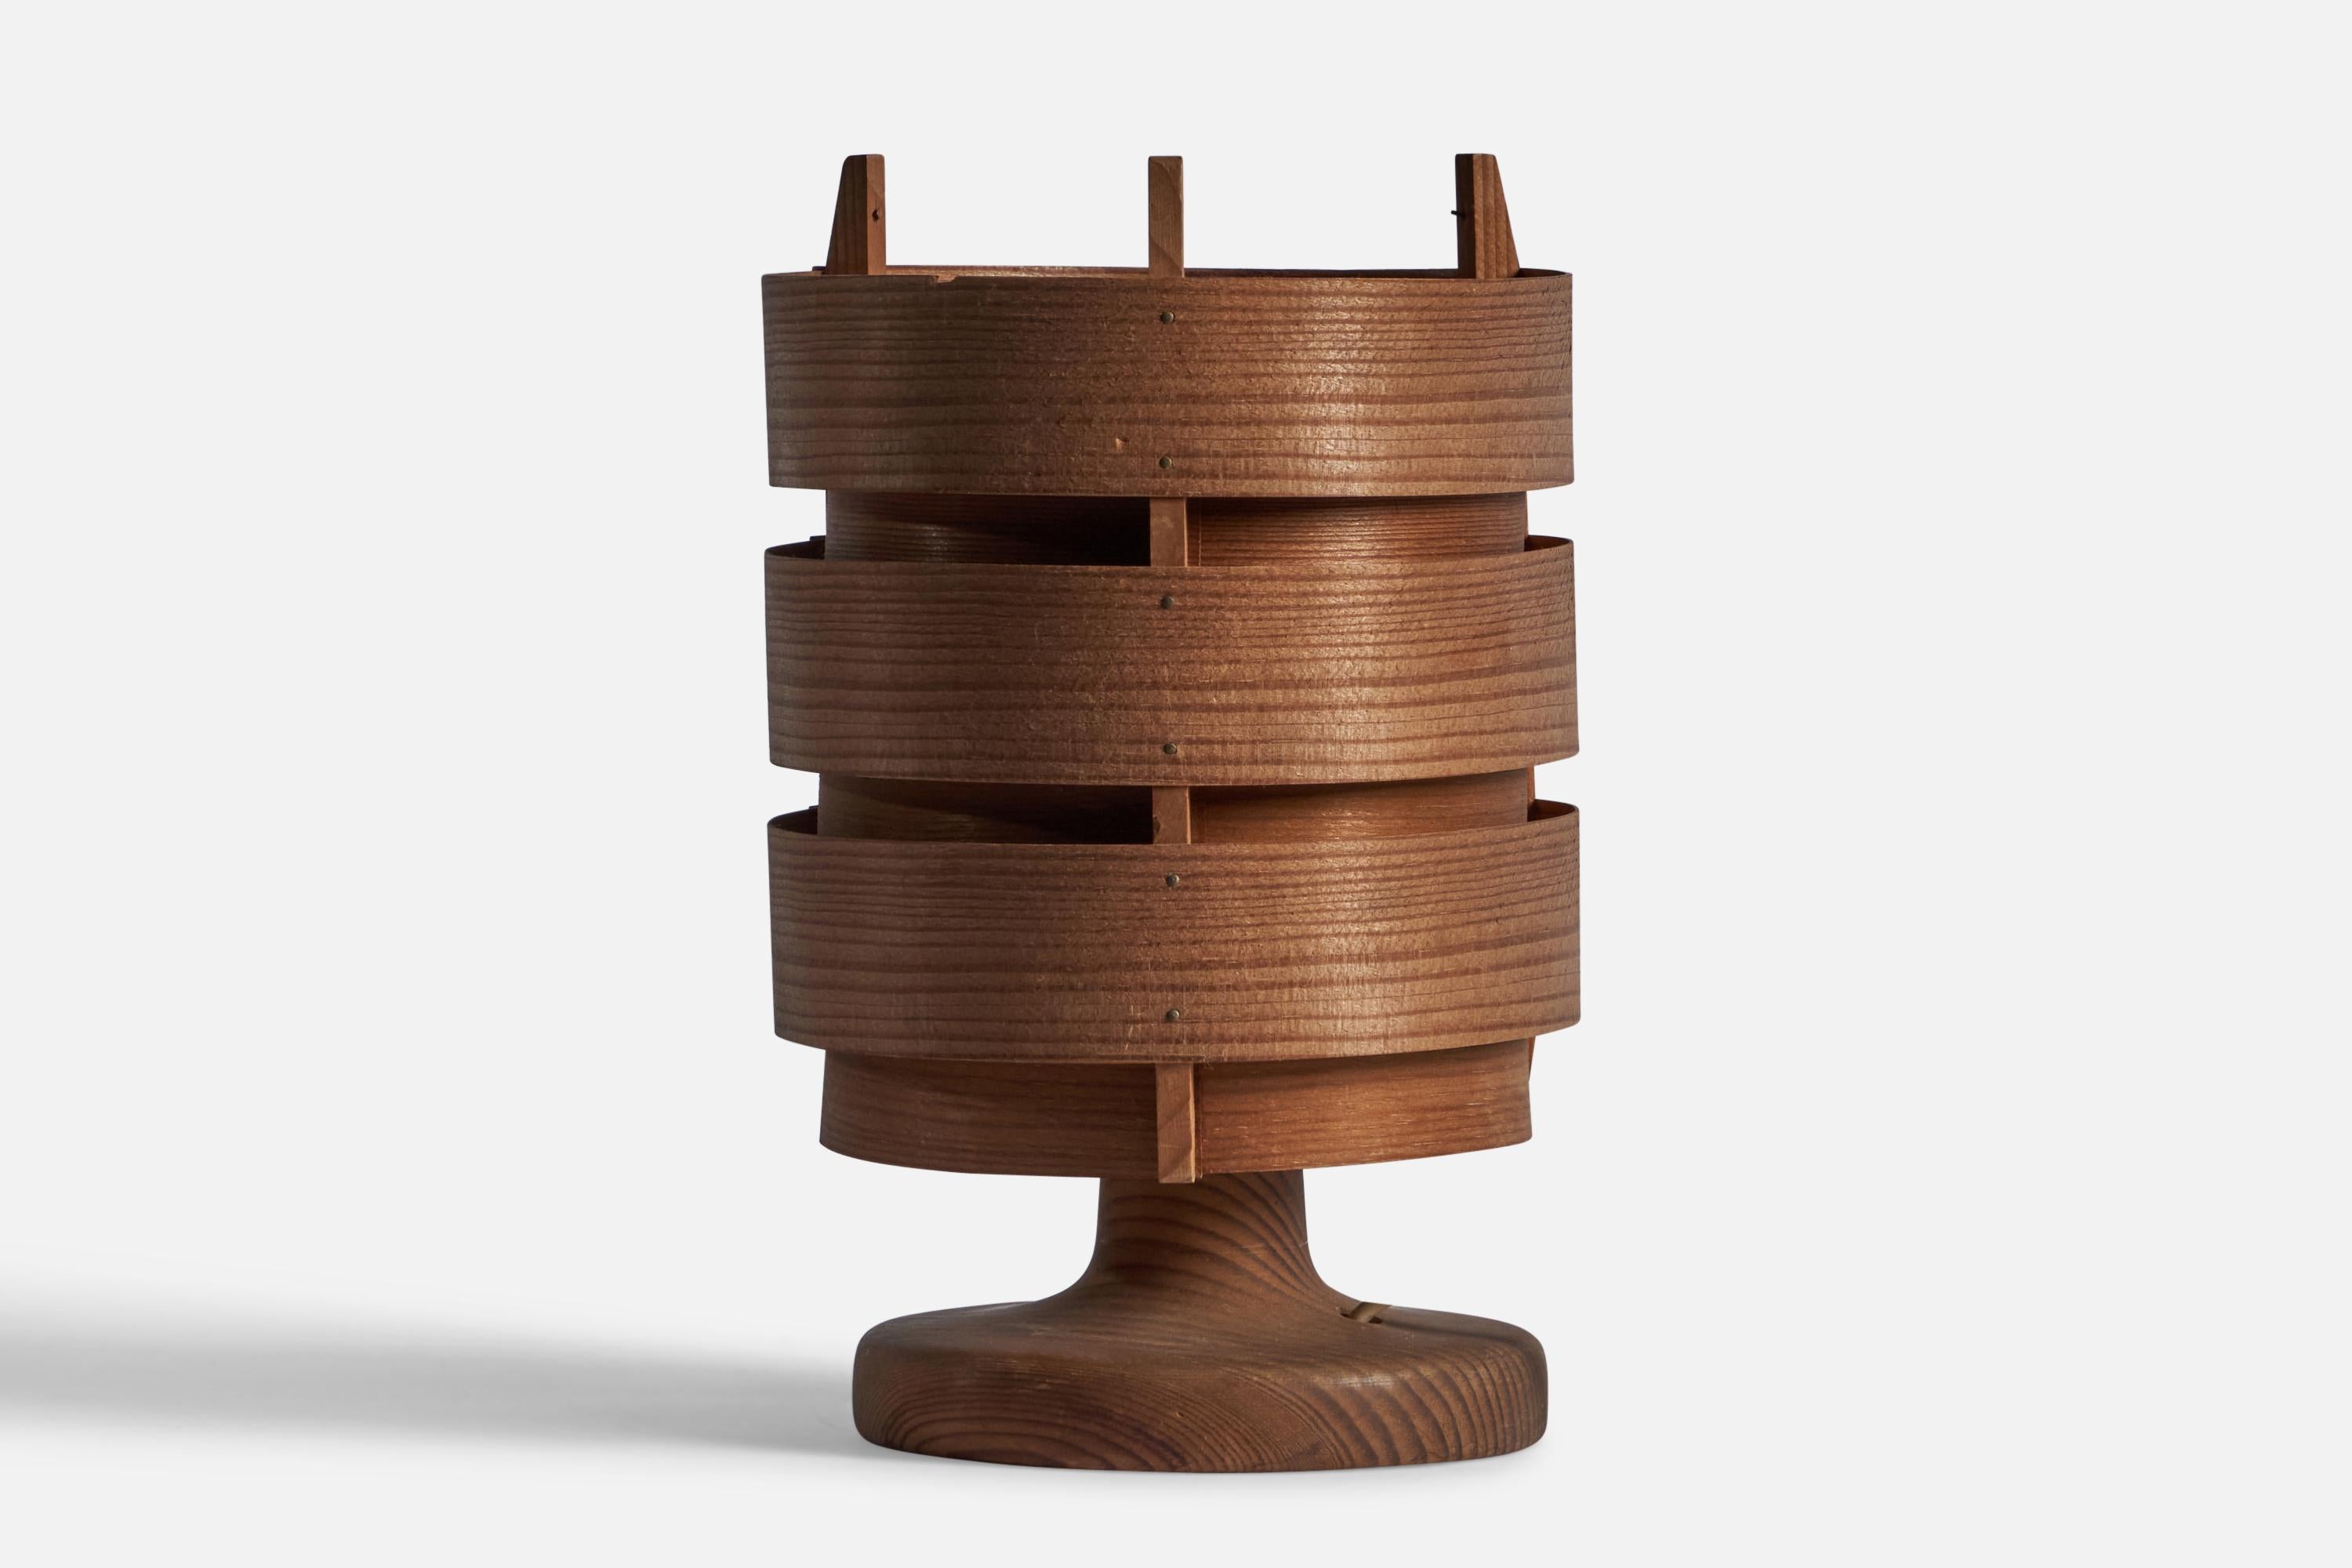 Lampe de table en pin et placage de pin moulé, conçue par Hans-Agne Jakobsson et produite par Agnes AB, Suède, années 1970.

Dimensions totales : 8.5